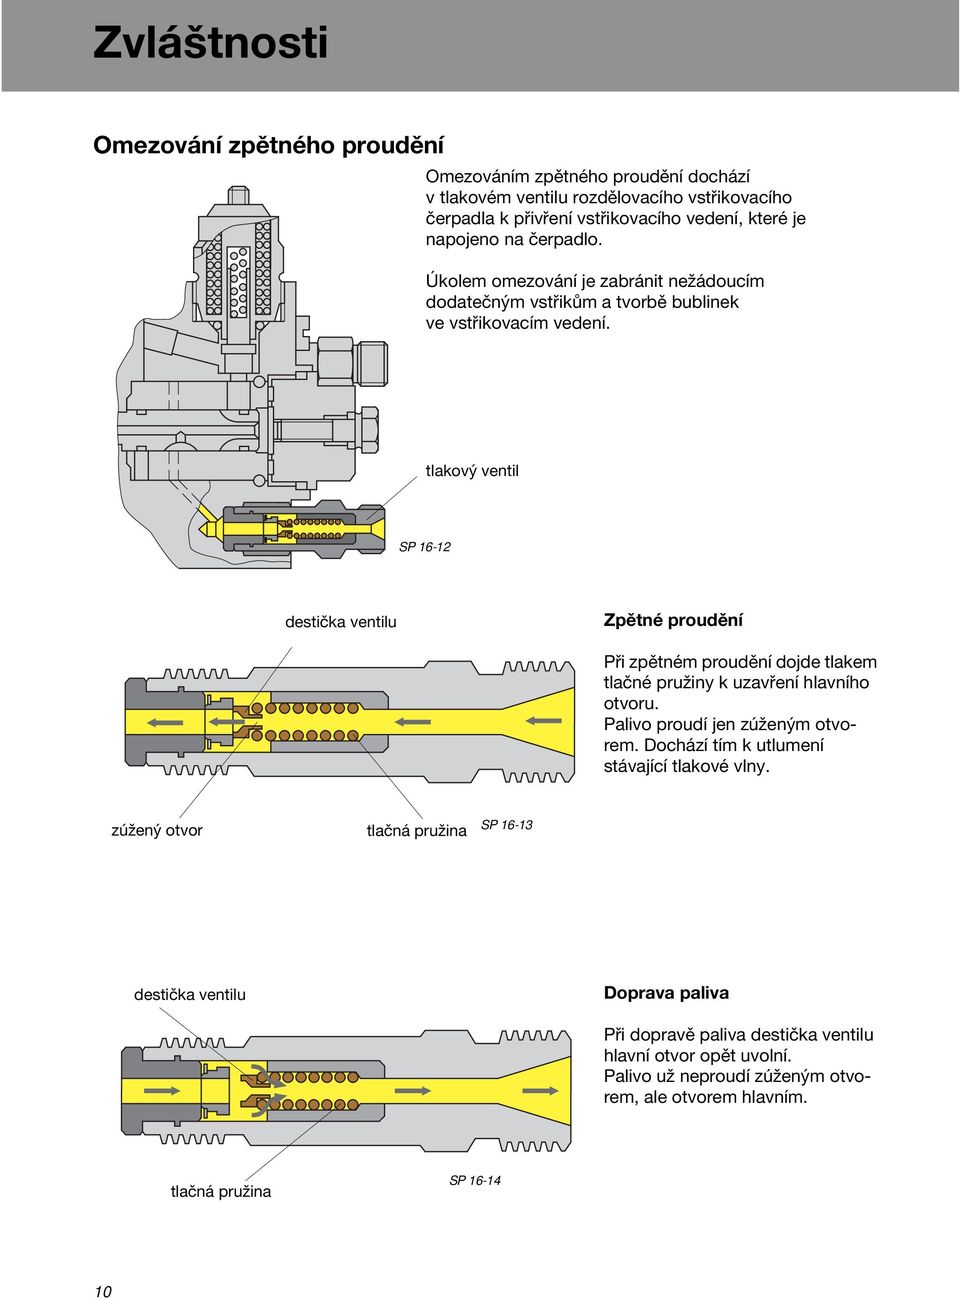 tlakový ventil SP 16-12 destička ventilu Zpětné proudění Při zpětném proudění dojde tlakem tlačné pružiny k uzavření hlavního otvoru. Palivo proudí jen zúženým otvorem.